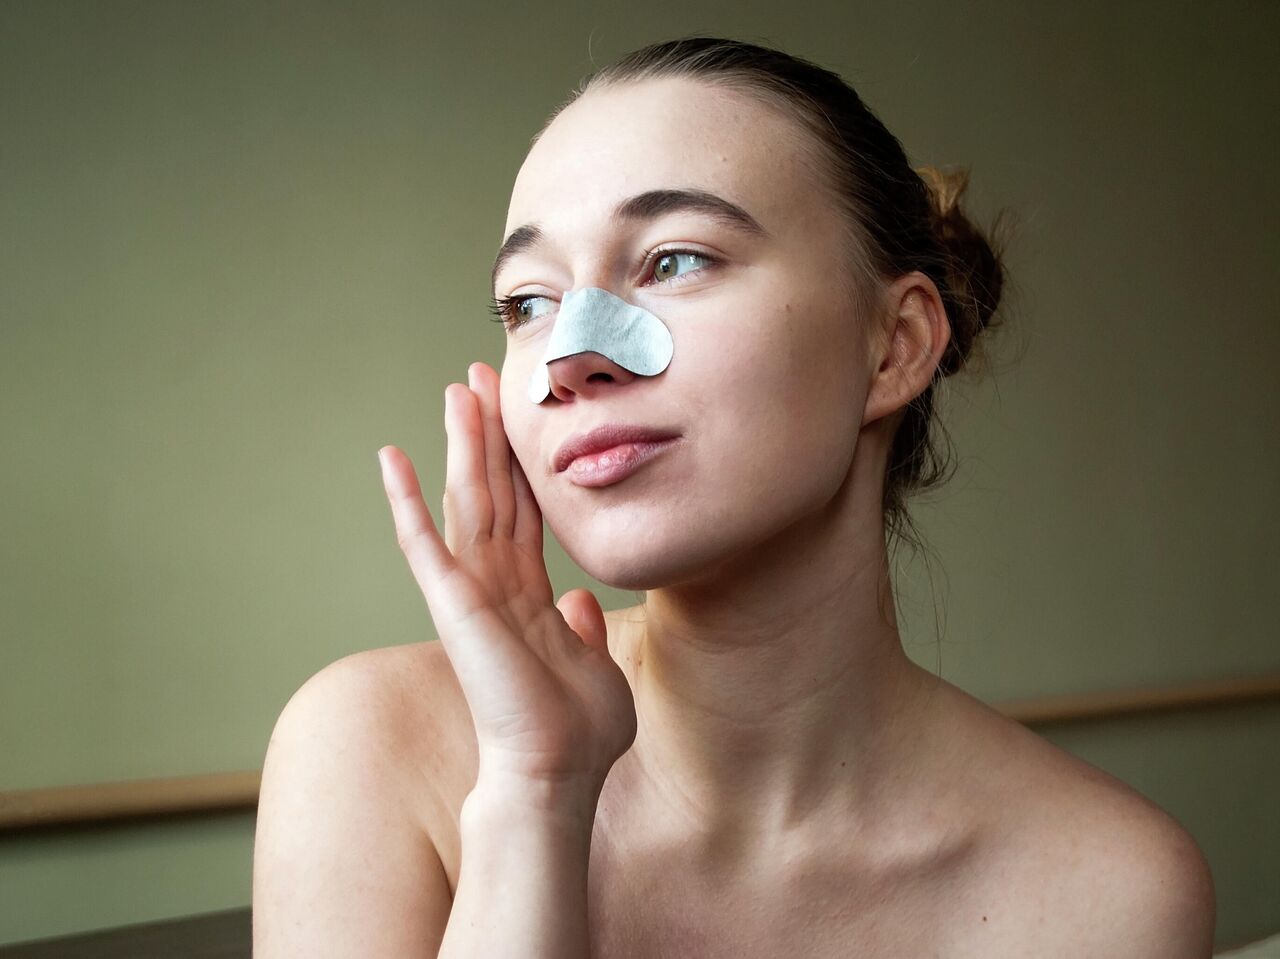 Черная маска от черных точек на лице: как сделать в домашних условиях, отзывы косметологов